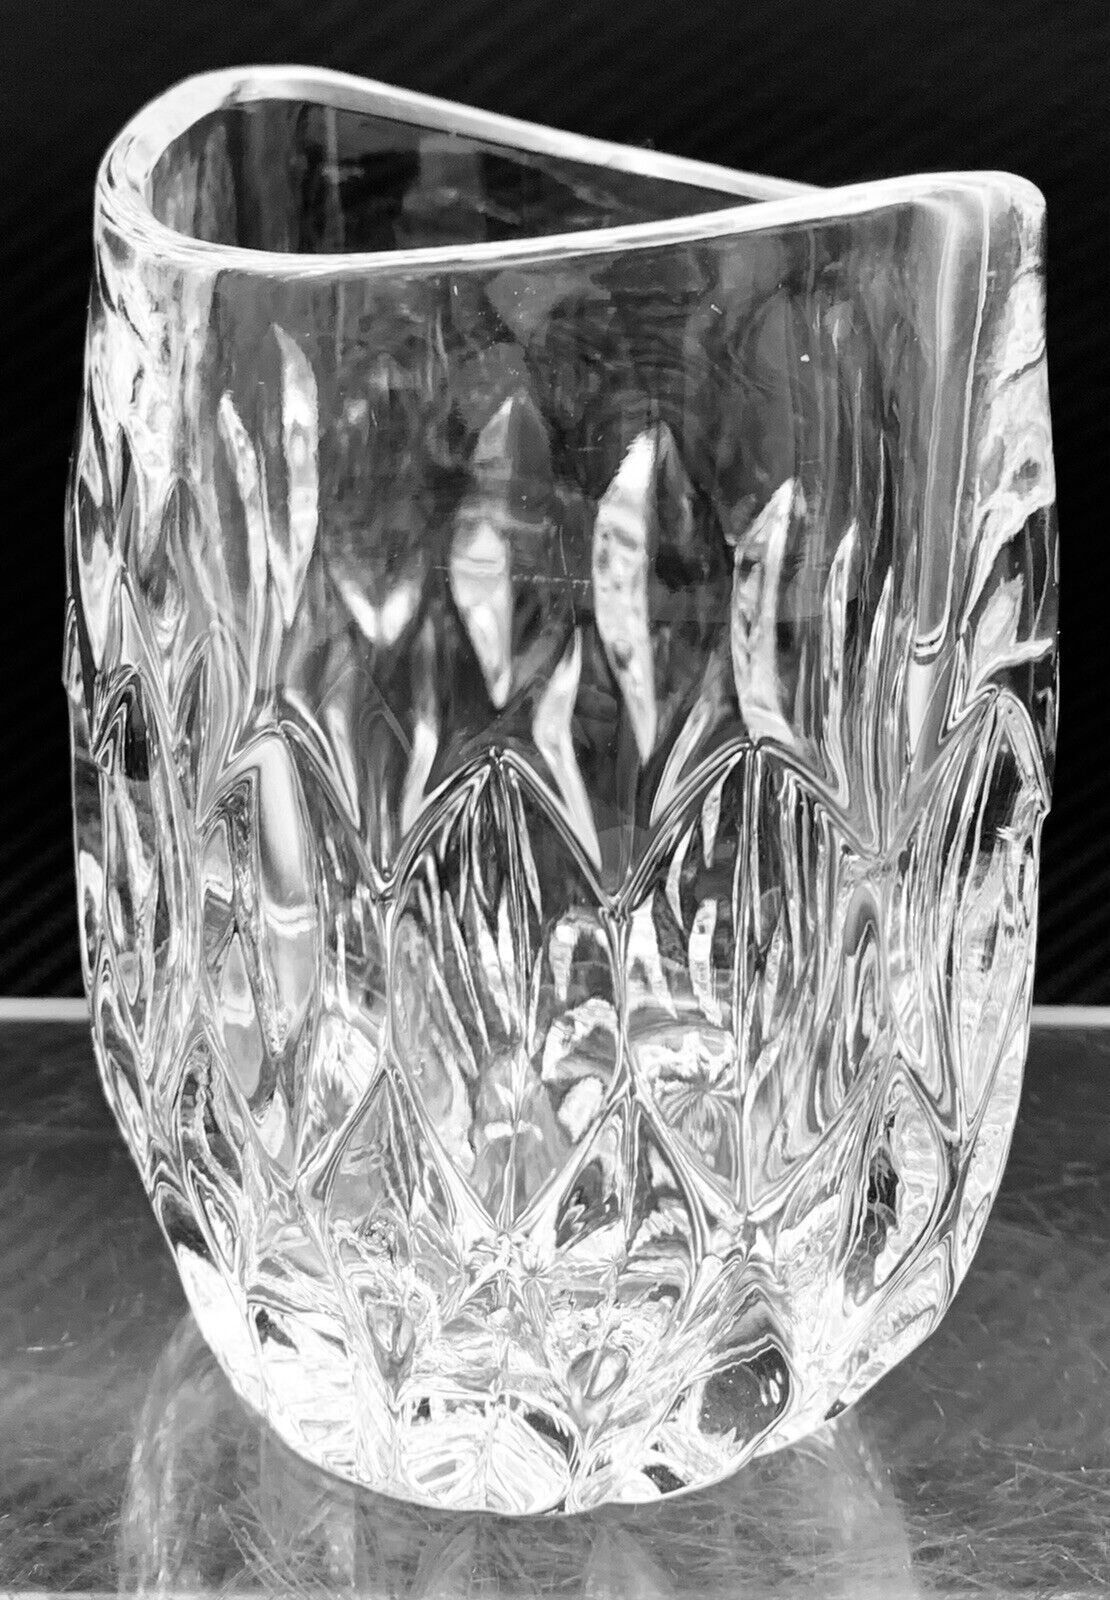 Gorham West Germany Full Lead Crystal Vase Althea Collection Pocket Vase 5”H.